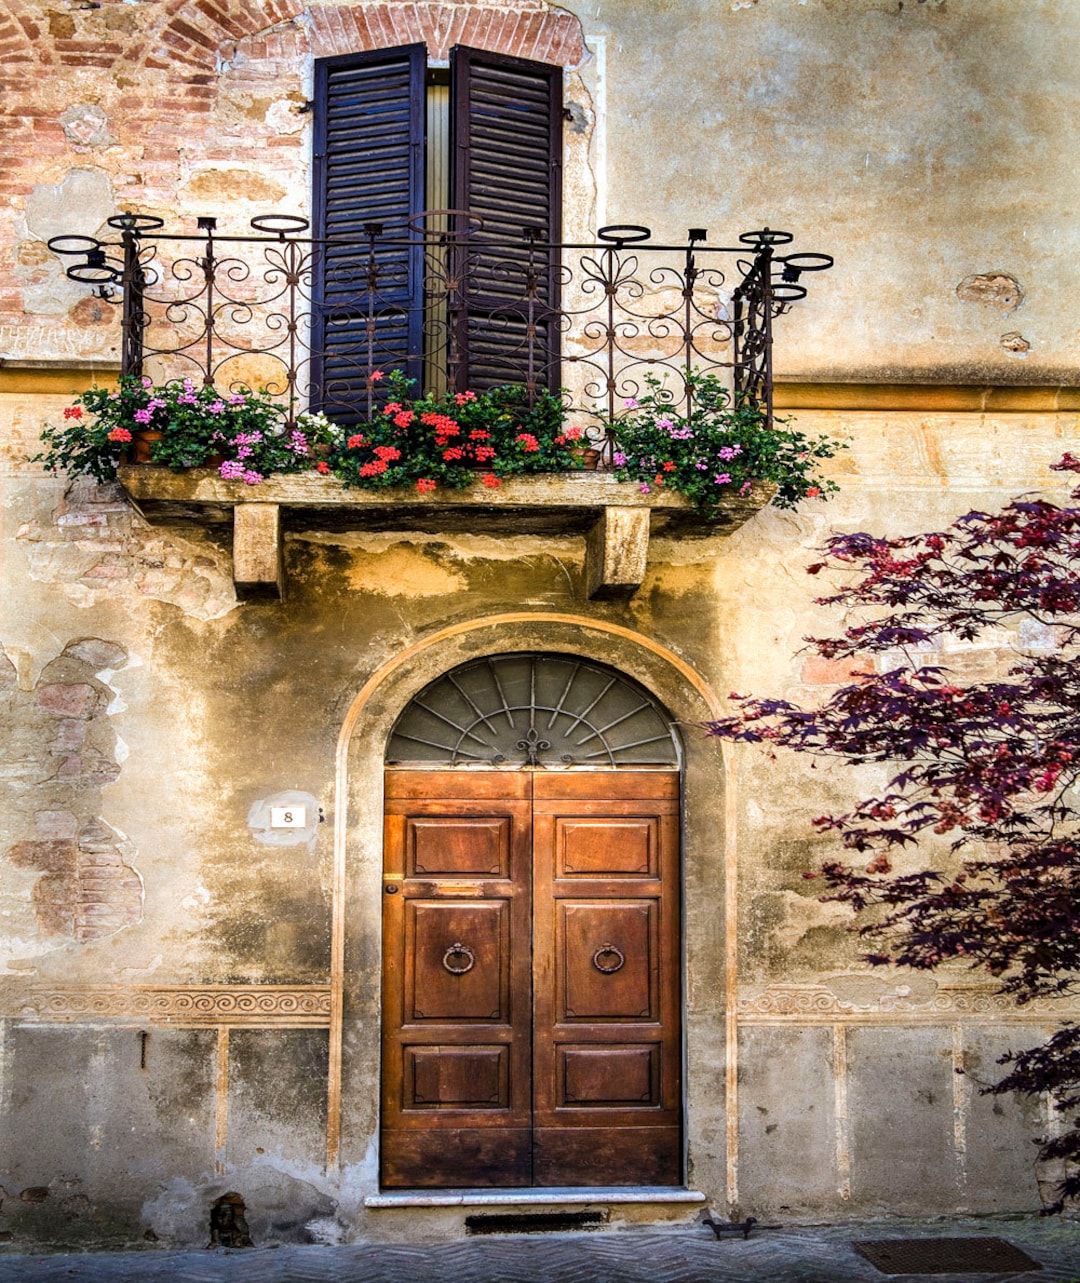 Tuscany Doors, Wooden Door, Pienza Doors and Balcony, Italy Travel ...